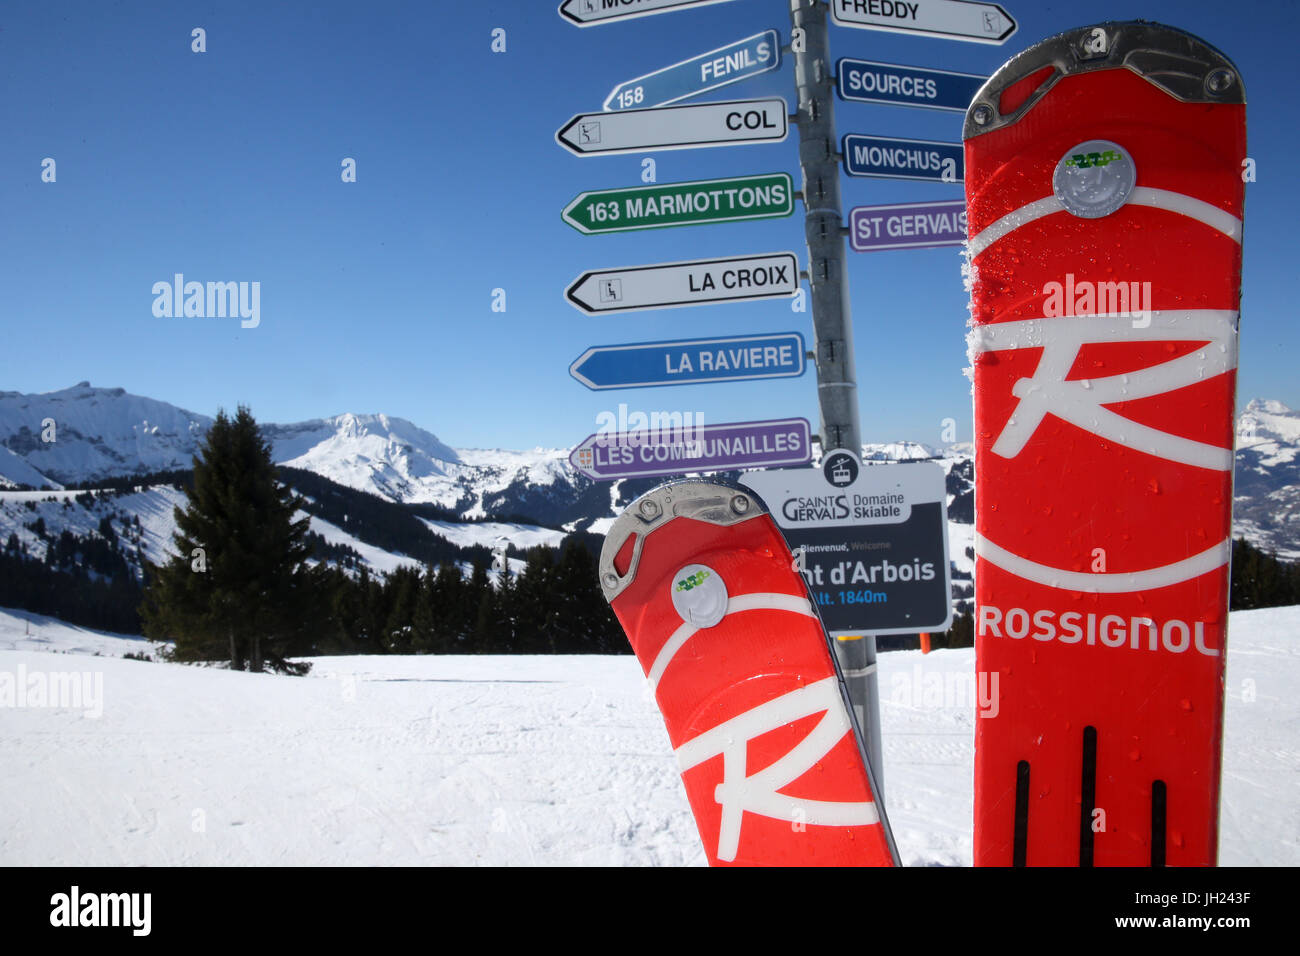 Alpes françaises. Dans les domaines de ski d'orientation et paire de ski rouge. La France. Banque D'Images